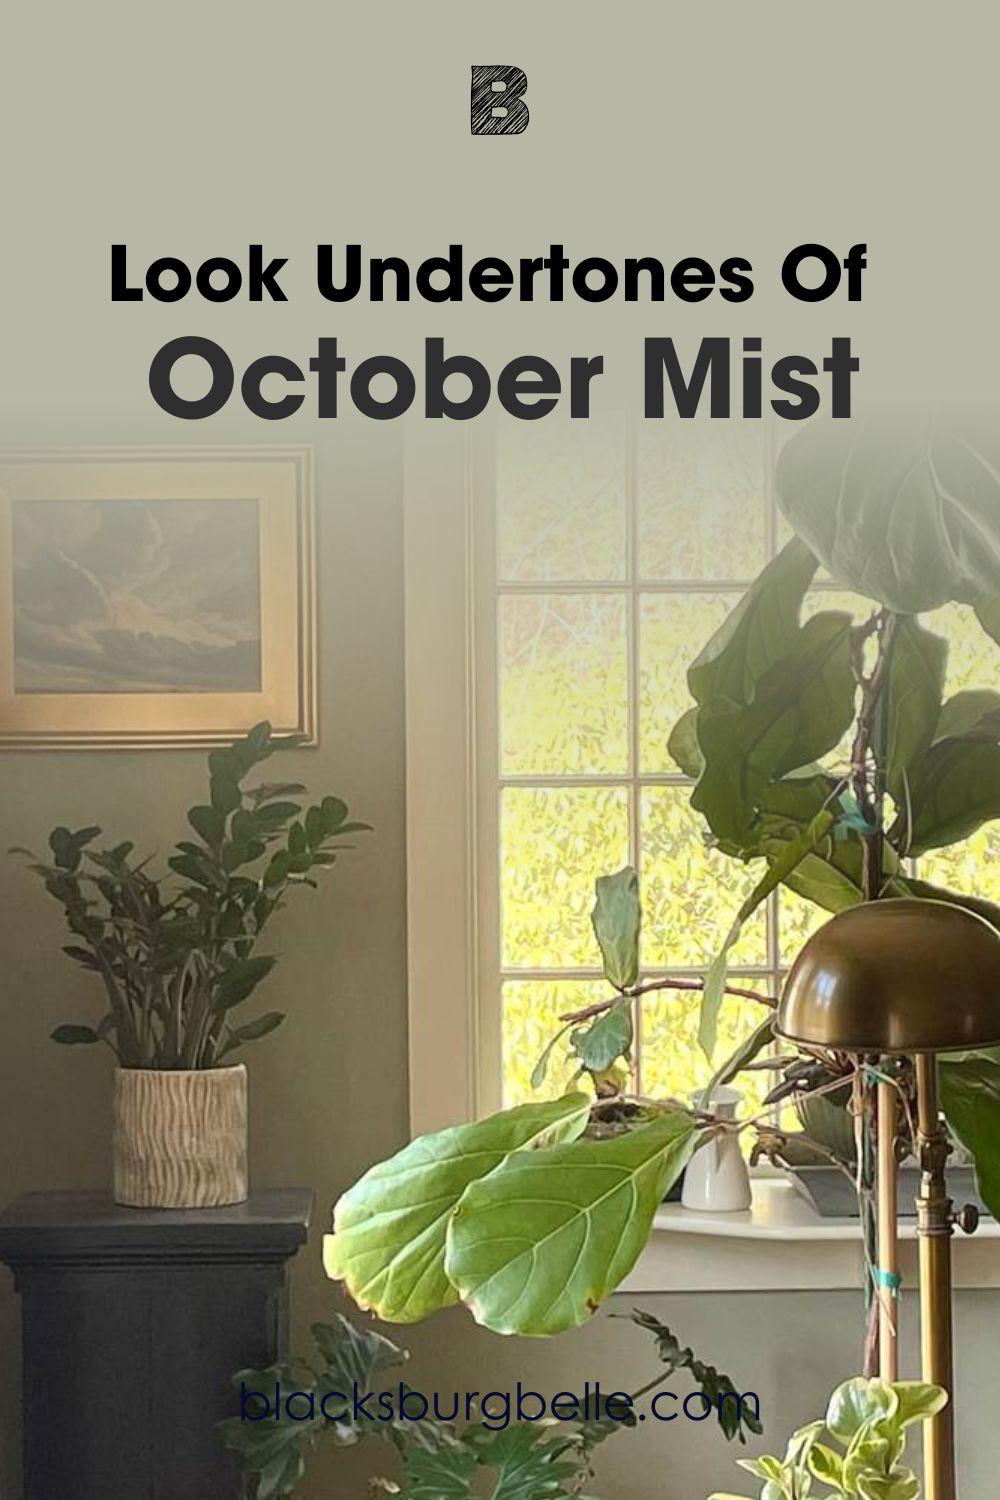 A Closer Look at the Undertones of October Mist